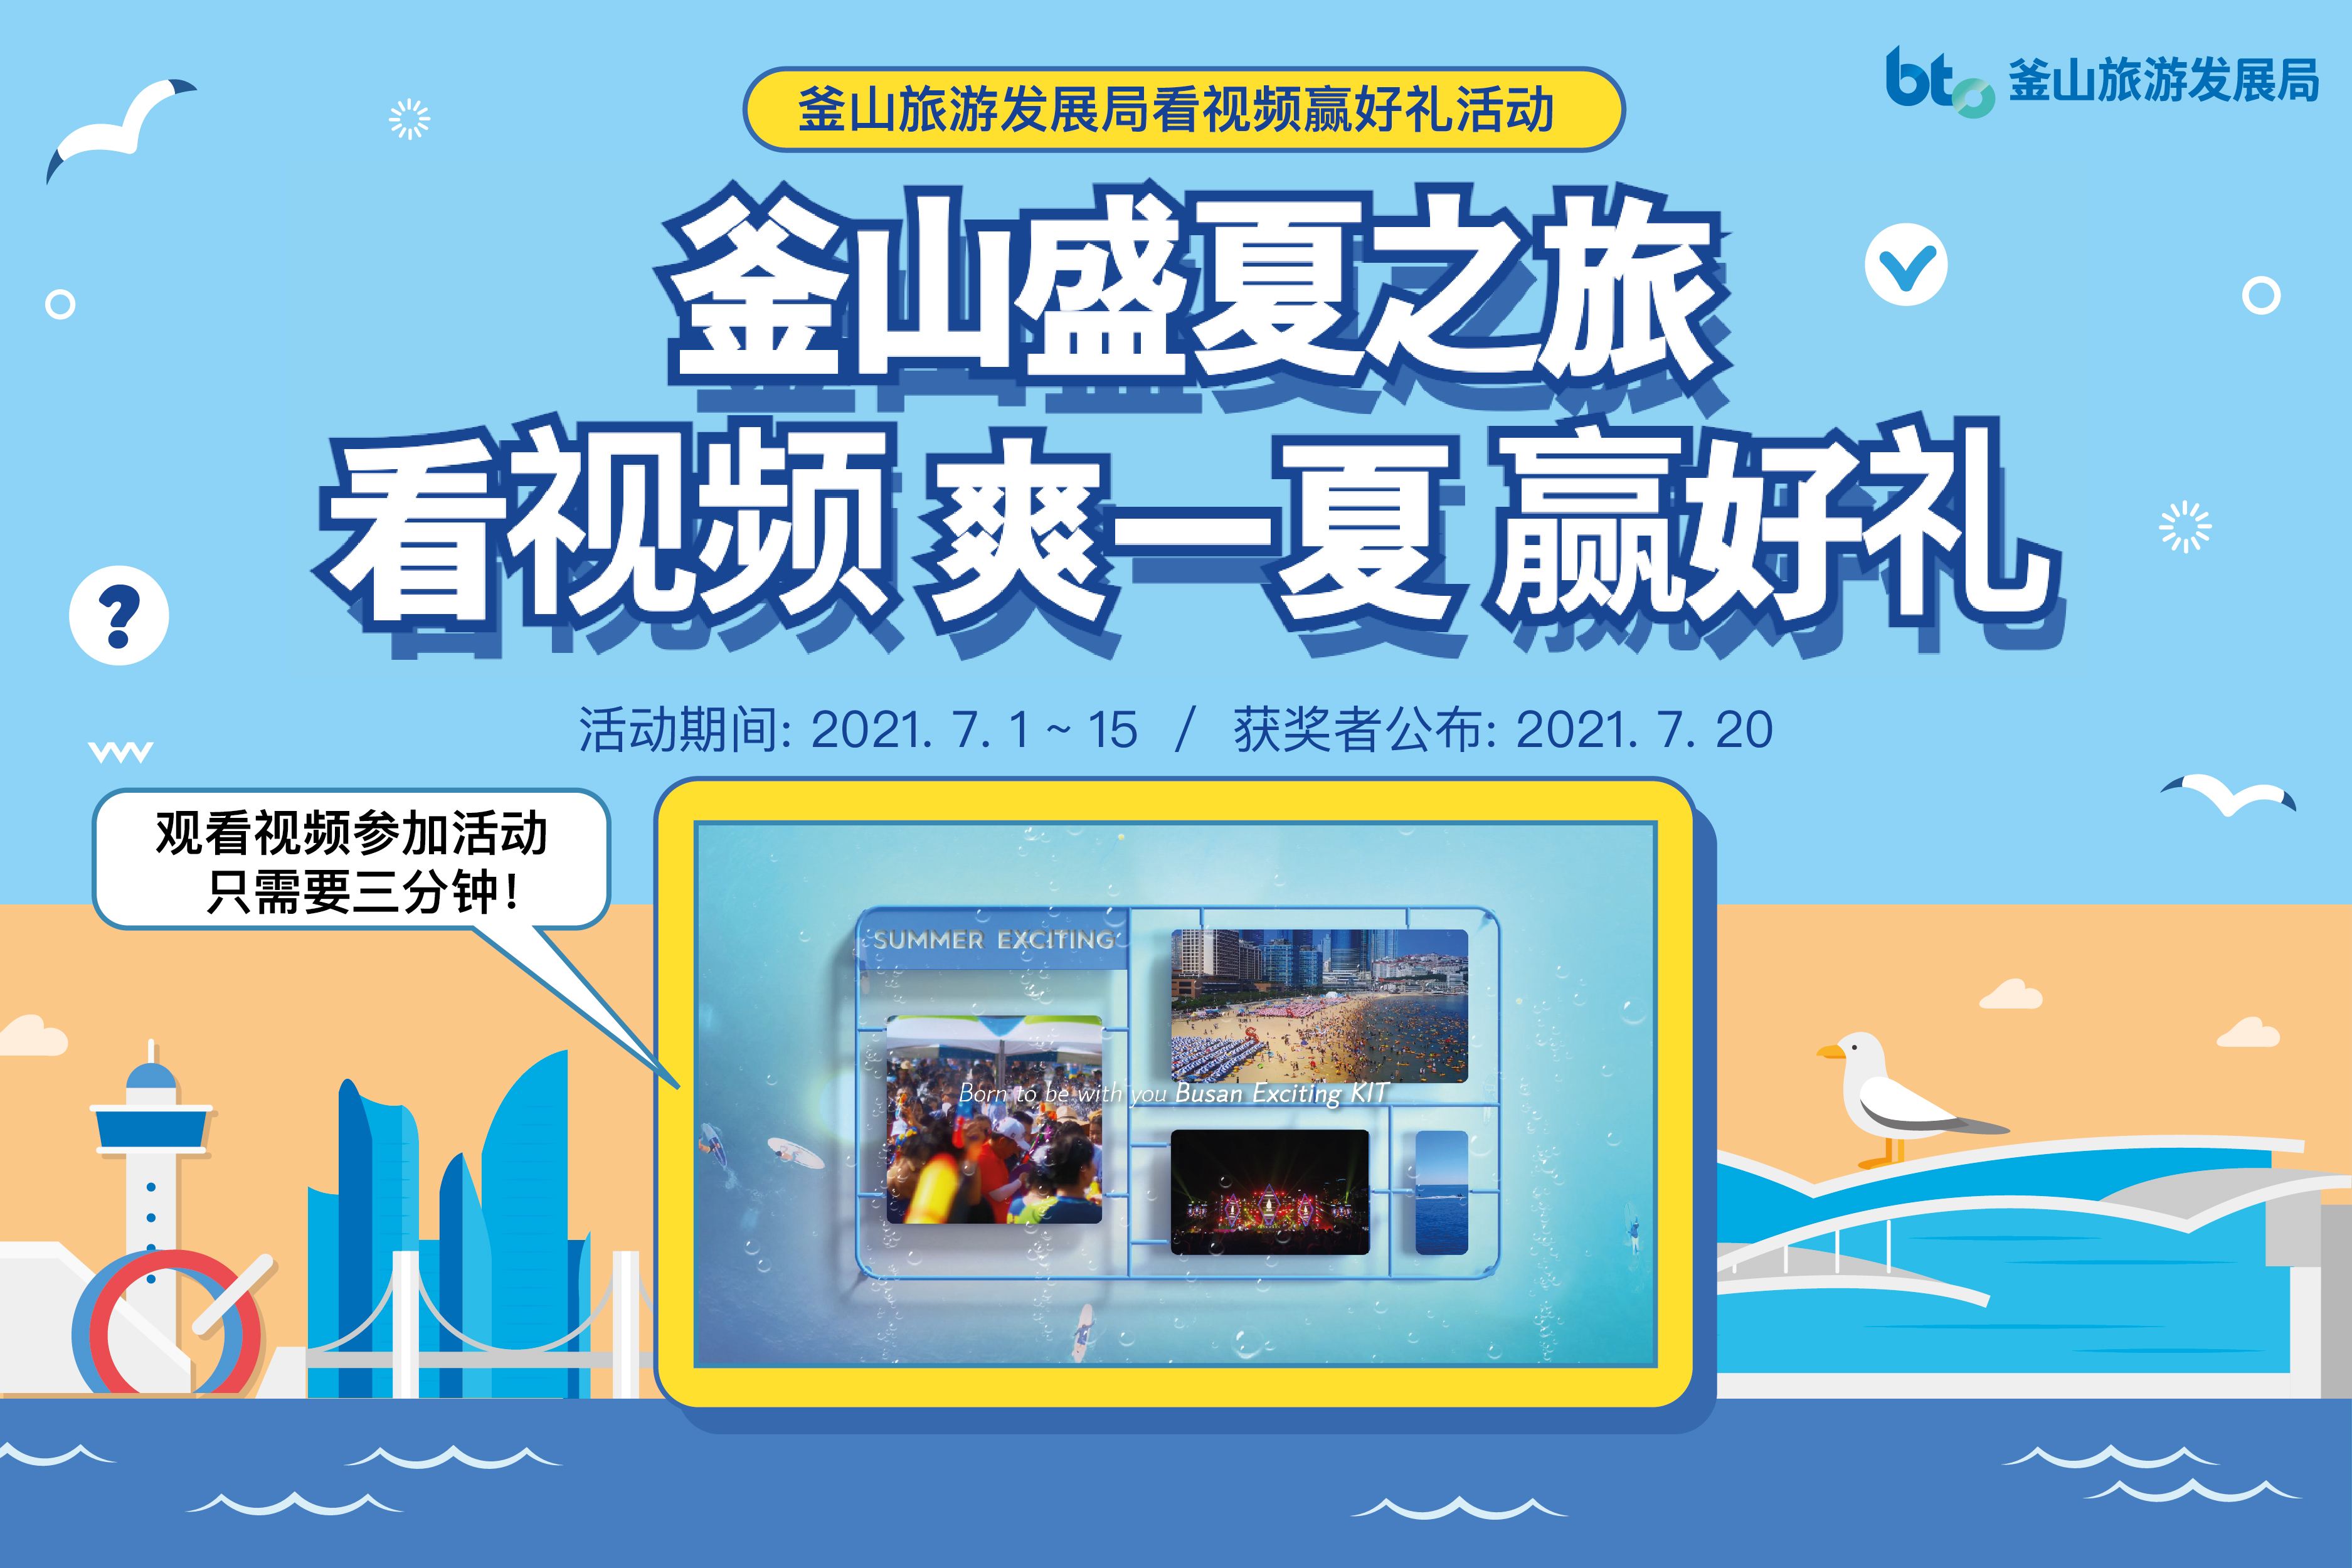 [有奖活动] 釜山旅游发展局看视频赢好礼活动